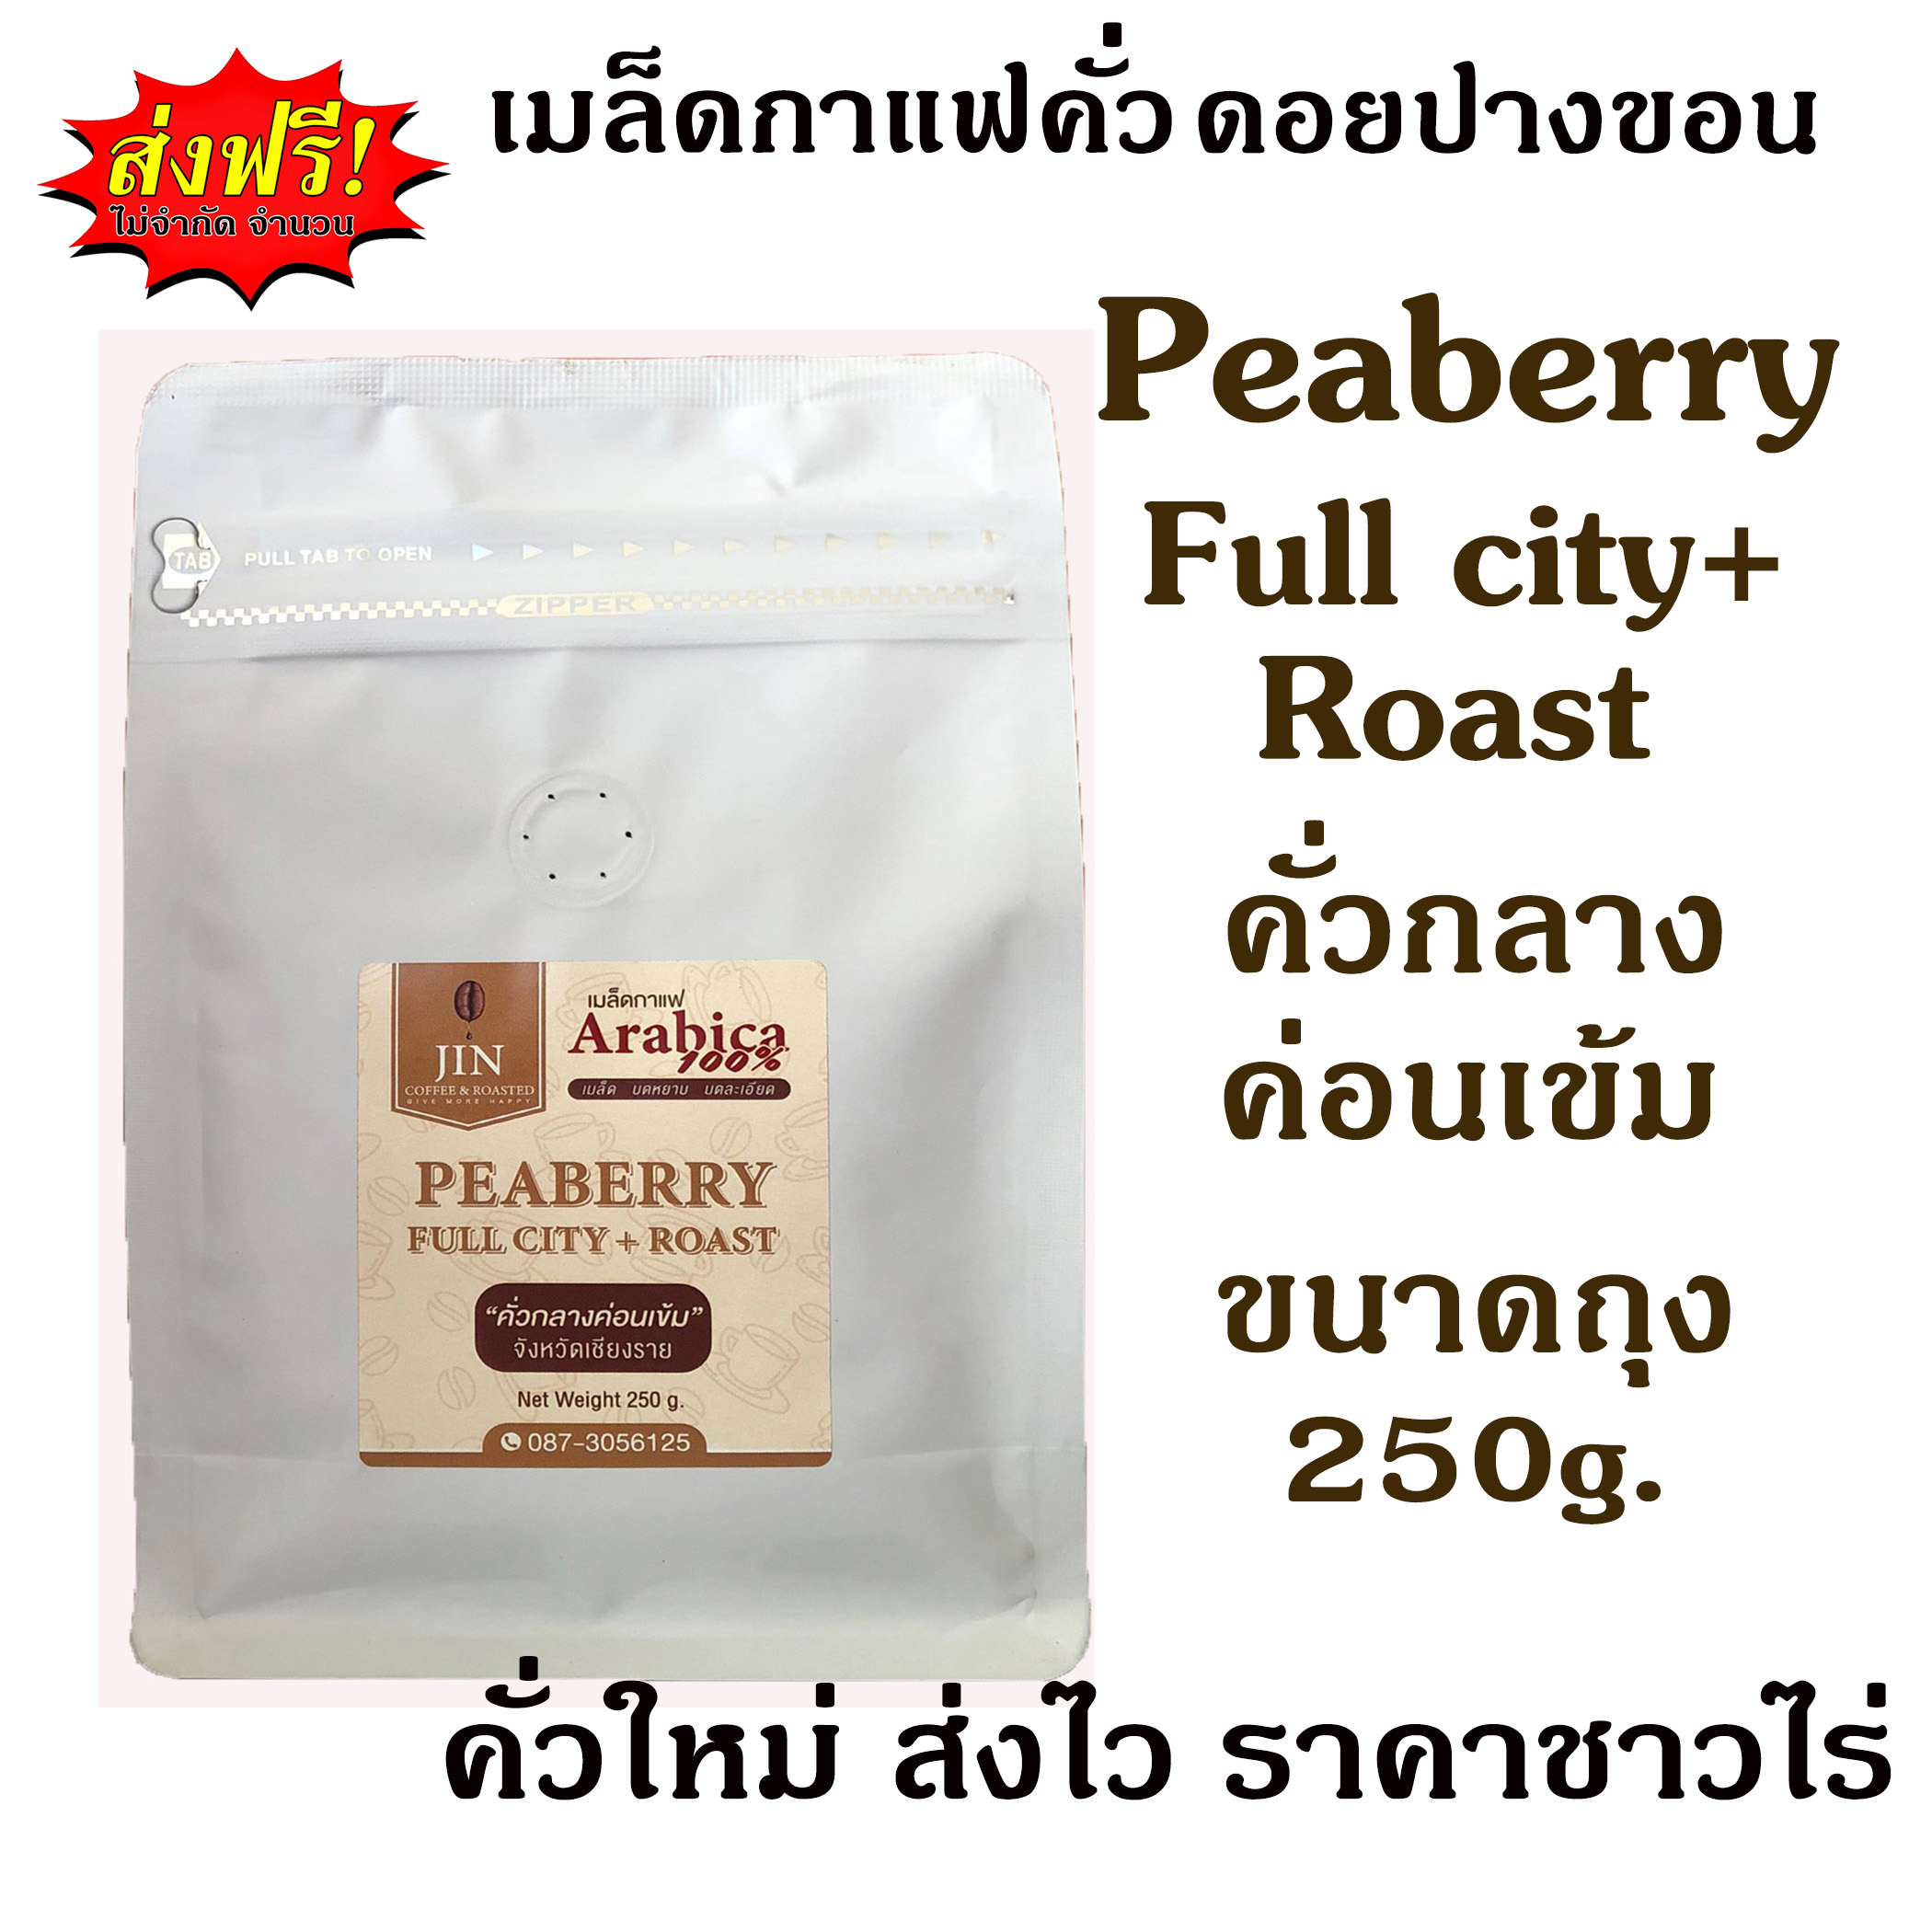 (คั่วเมล็ด)เมล็ดกาแฟคั่วกลางค่อนเข้ม Peaberry 250g. Full city+ Roast พีเบอรี่”ดอยปางขอน”100% เชียงราย ส่งไว คั่วสดใหม่ตลอด